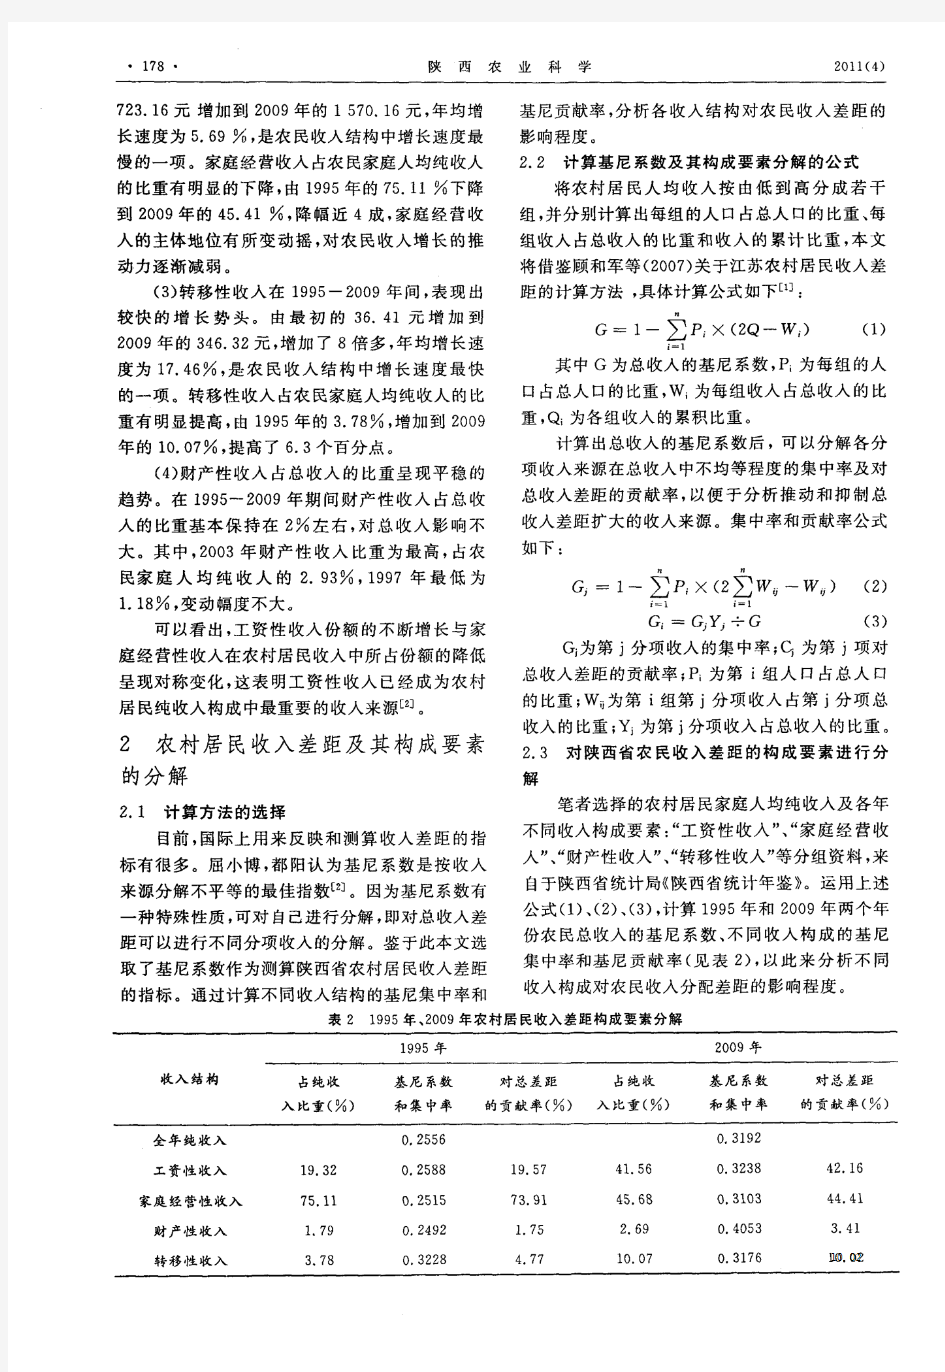 陕西省农民收入差距及构成变化研究